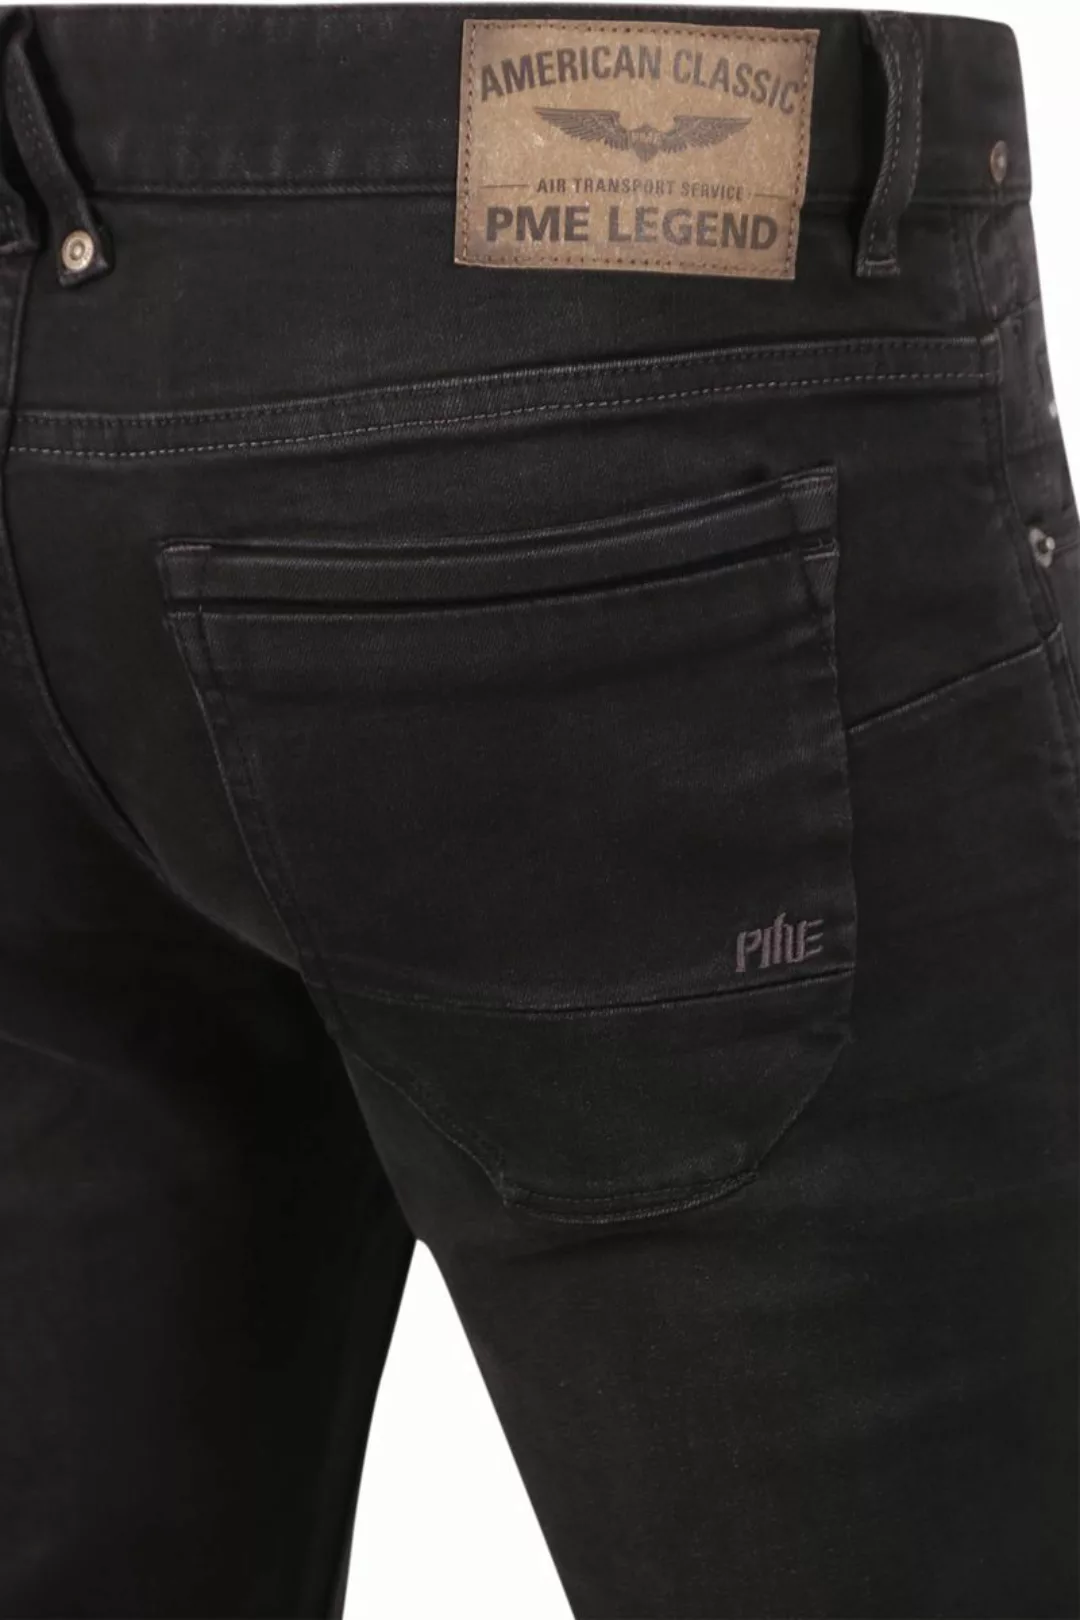 PME Legend Nightflight Jeans Schwarz RBD - Größe W 35 - L 36 günstig online kaufen